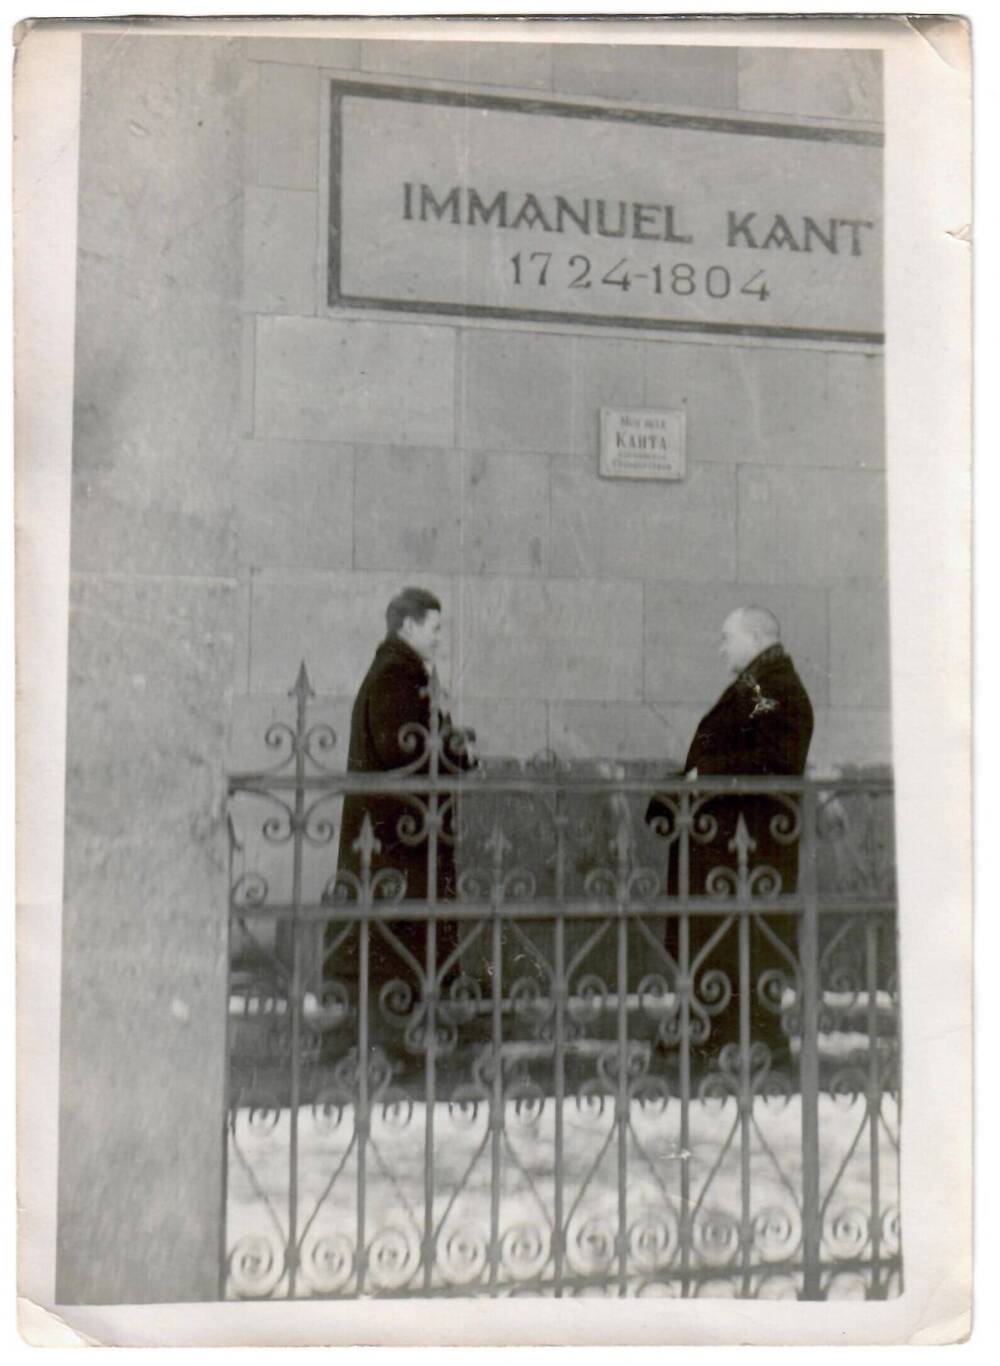 Фотография. В.А. Бузовкин с товарищем у могилы И. Канта в Калининграде. 1959 г. (из архива Багратионовской детской школы искусств).